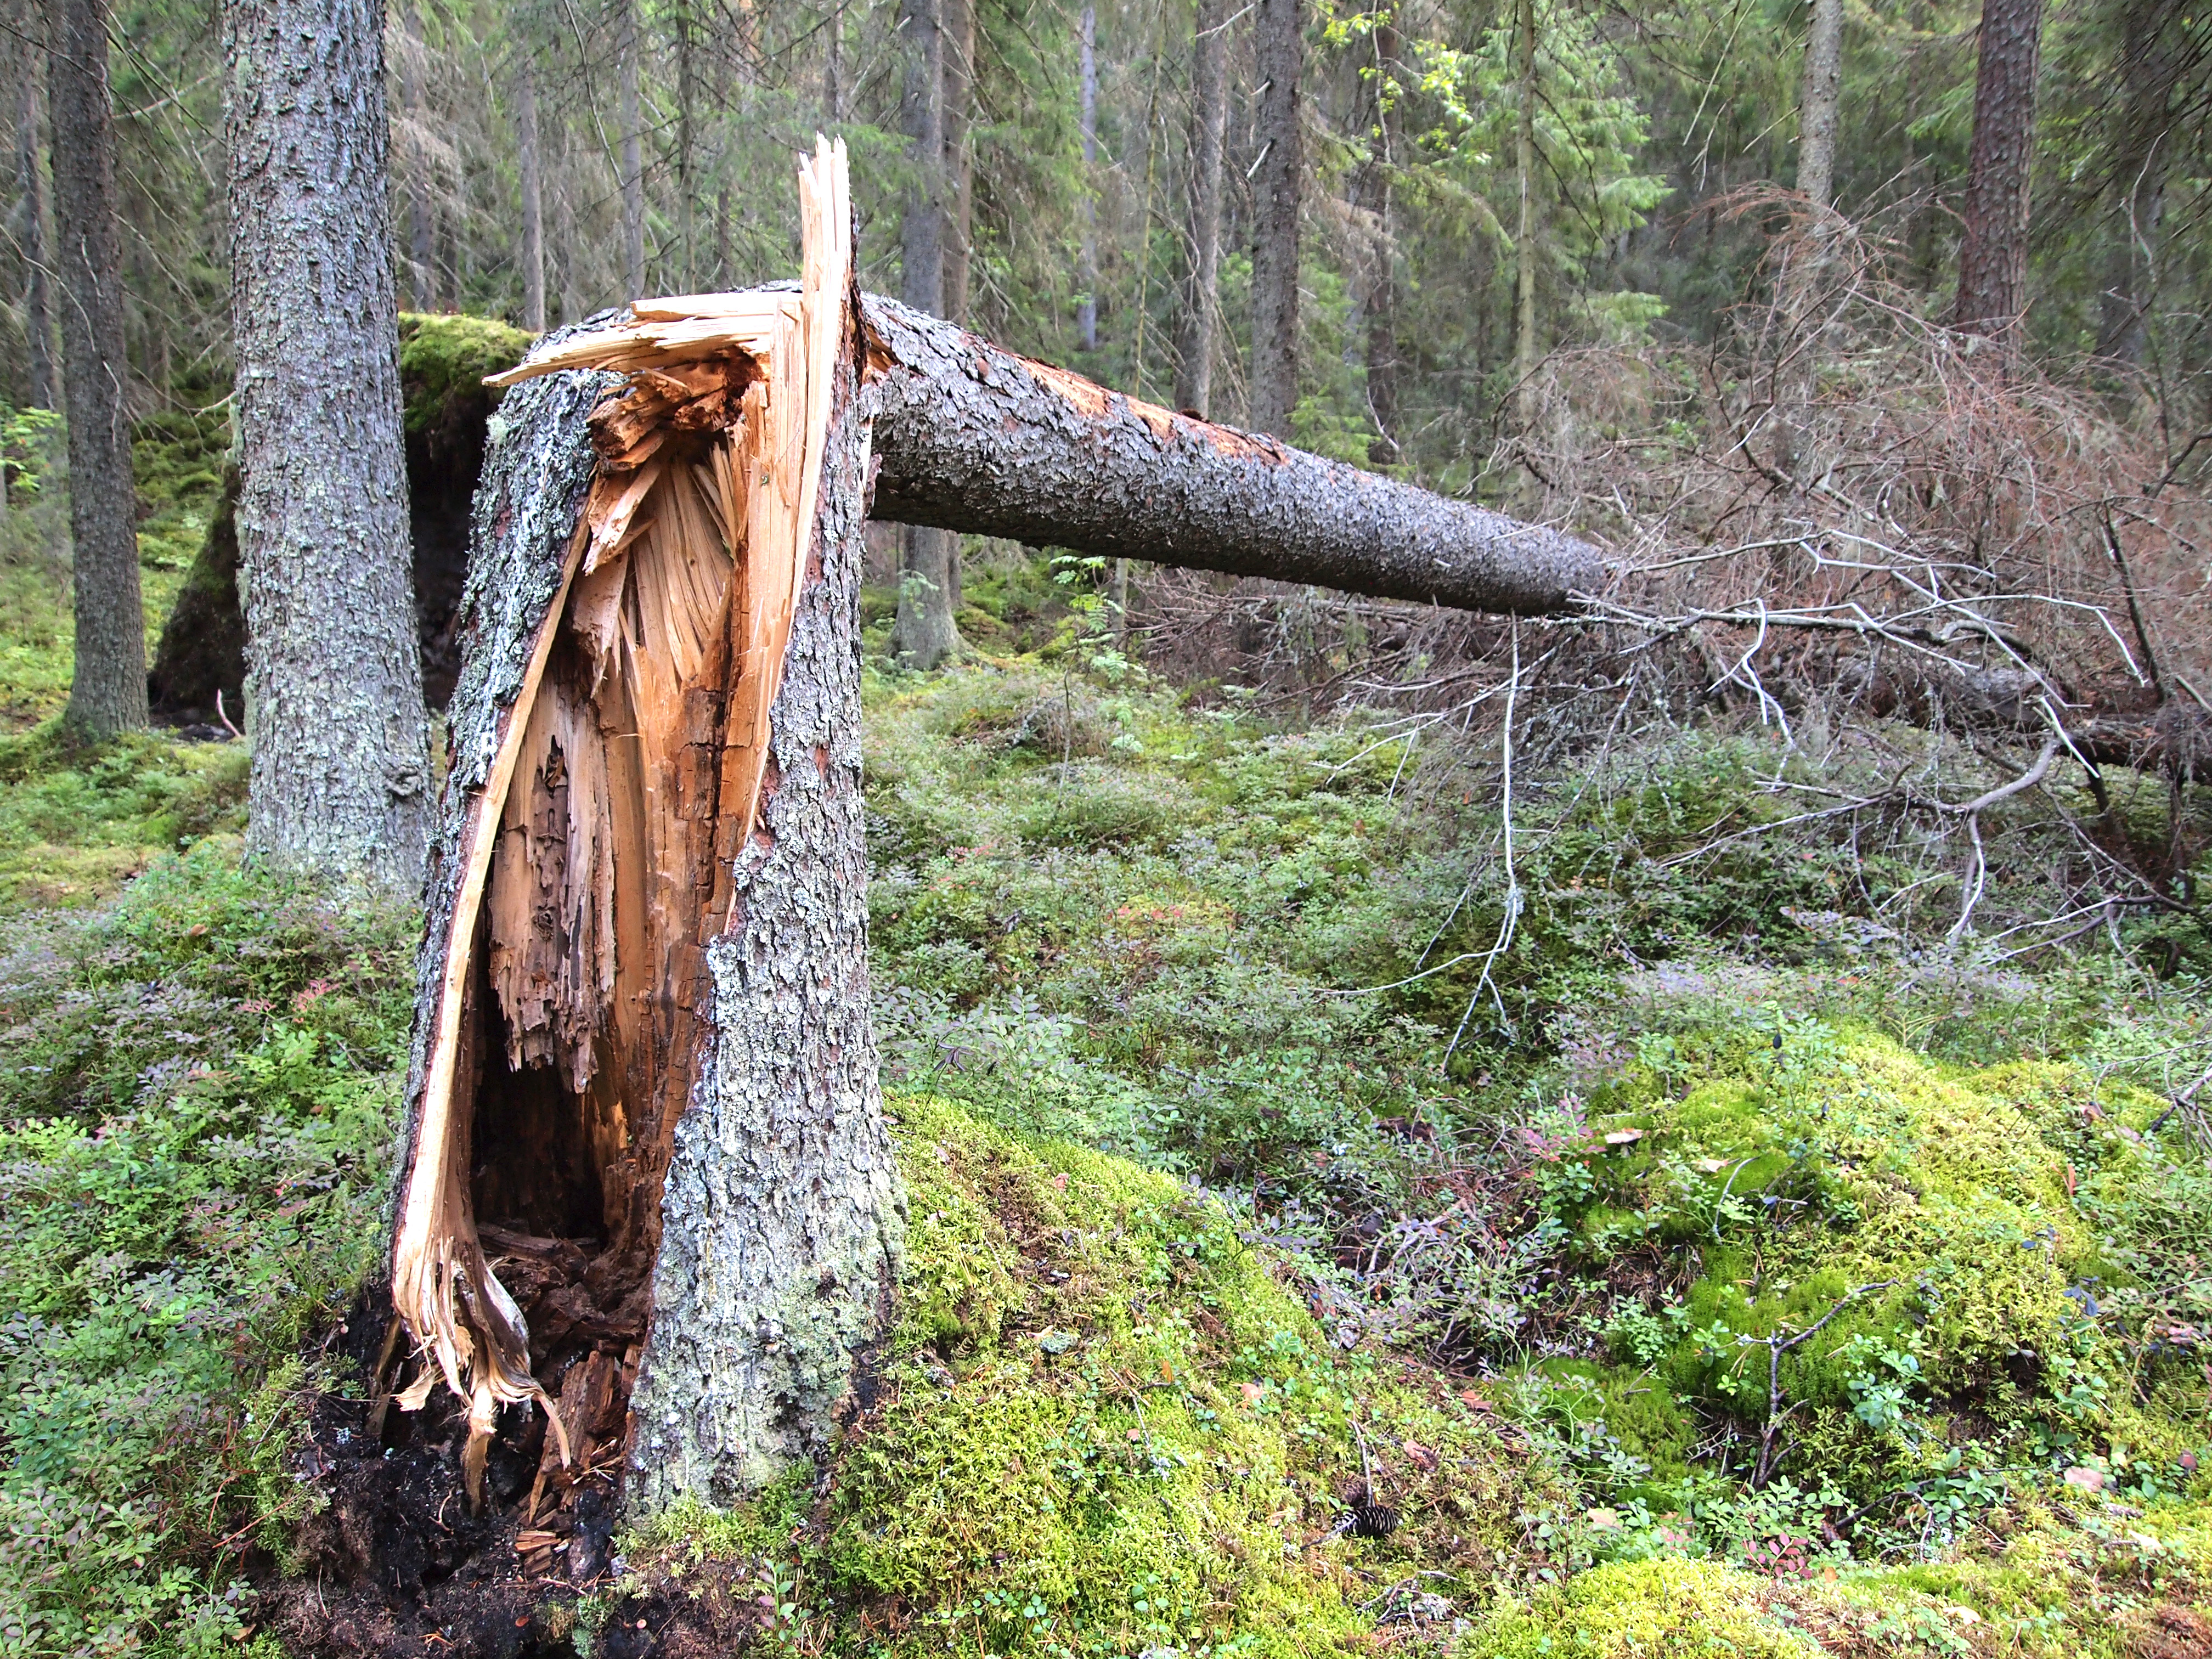 File:Jyväskylä - broken tree.jpg - Wikimedia Commons